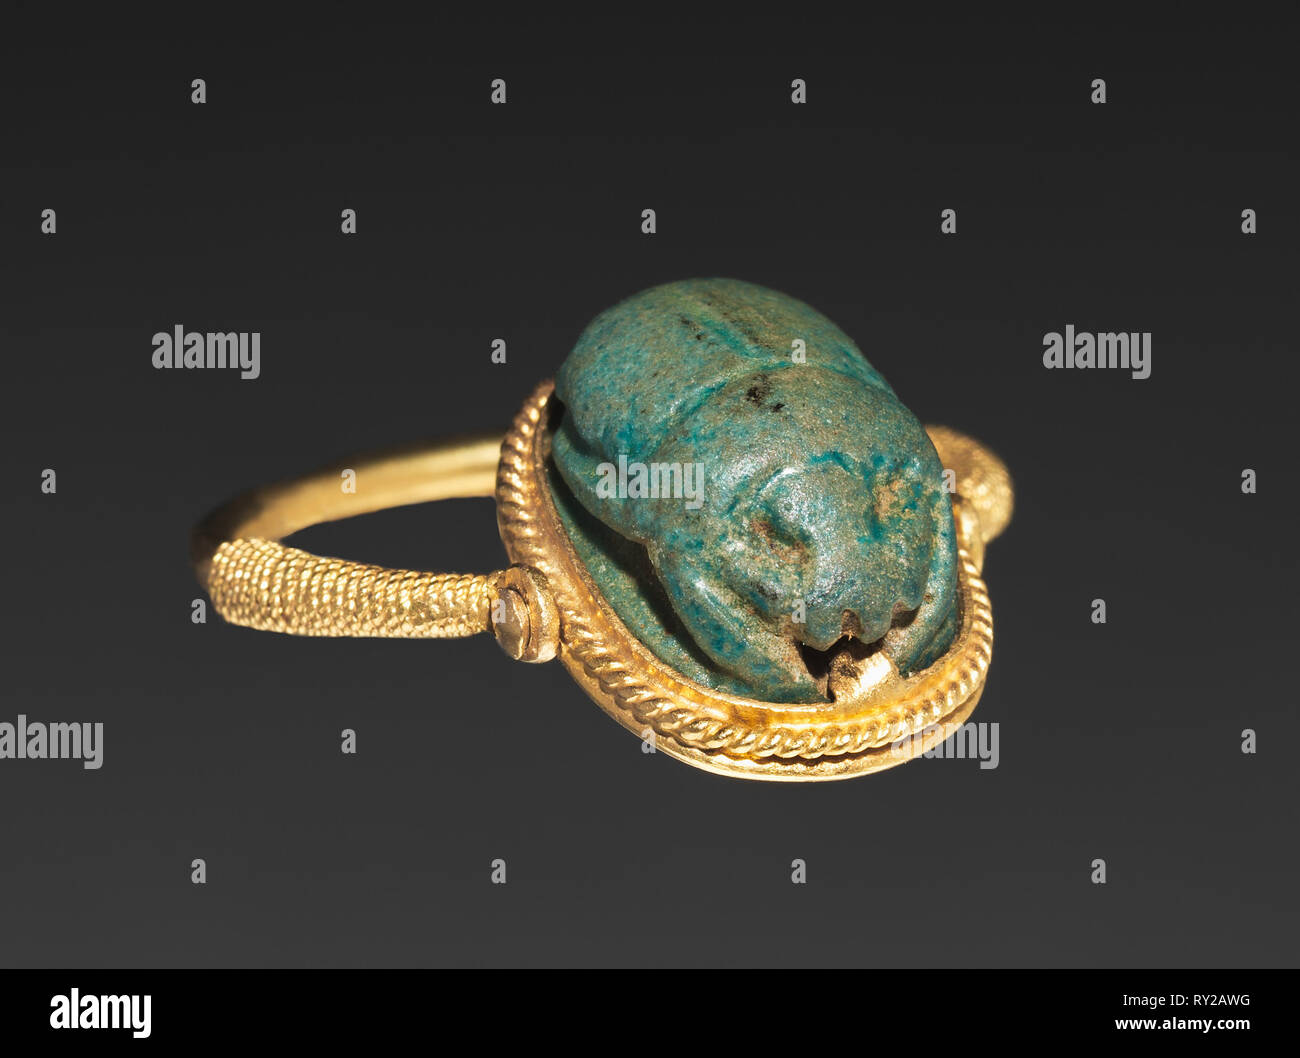 Skarabäus Ring, 1540-1069 BC. Ägypten, Neues Reich. Türkis Fayence (auf  drehbaren Lünette in modernen Gold Ring montiert); Durchmesser: 2,2 cm (7/8  in.) Durchmesser einschließlich Blende: 1,2 cm (1/2 in Stockfotografie -  Alamy